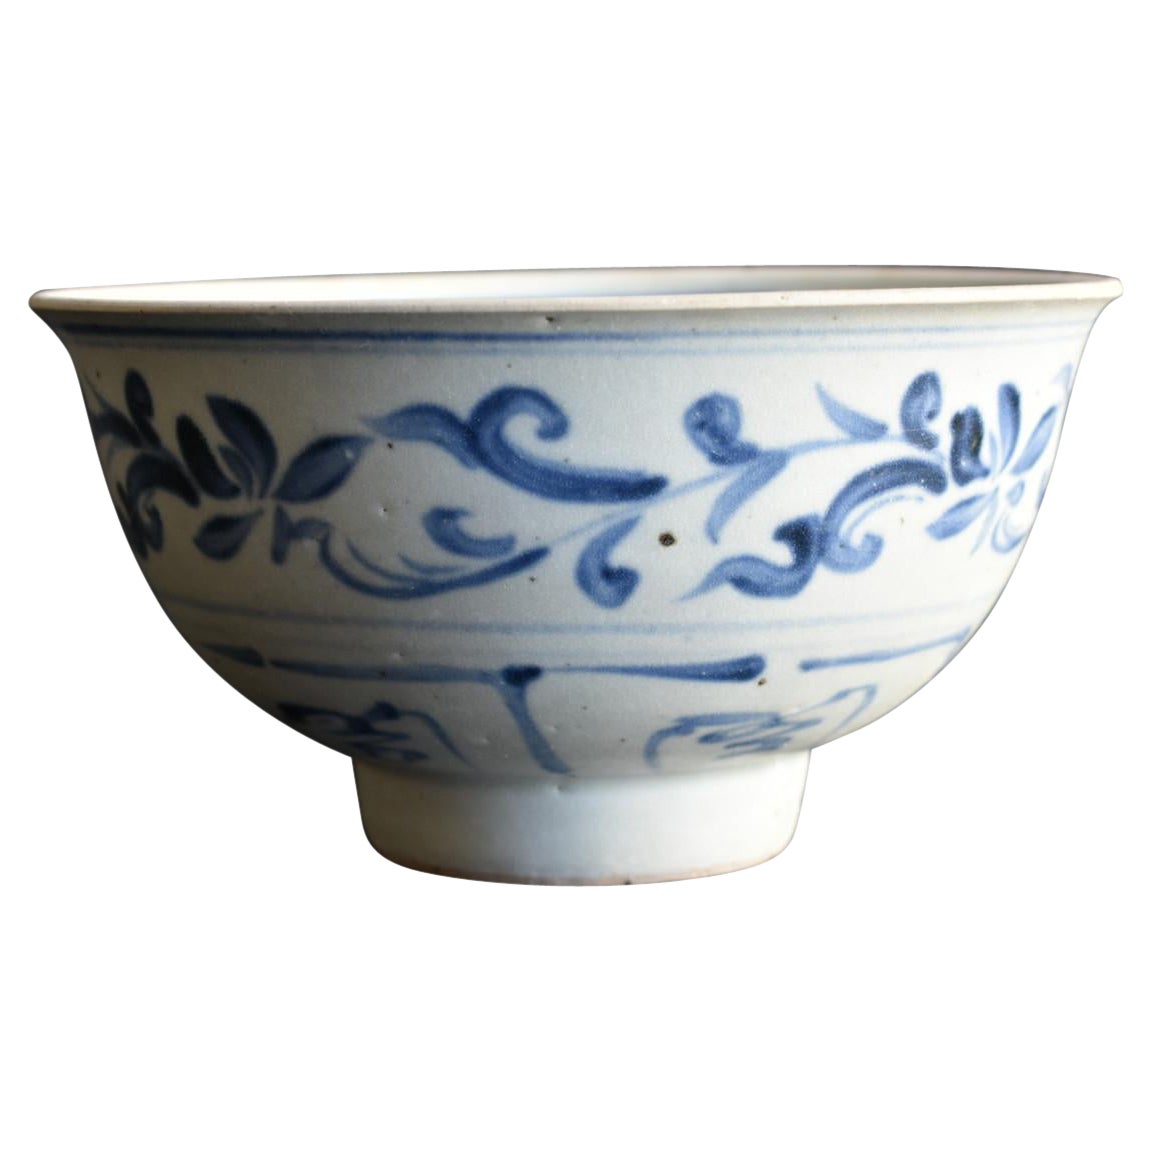 Vietnamesische antike Schale aus dem 16. Jahrhundert / „Annan-chawan“ / Südostasiatische Keramik